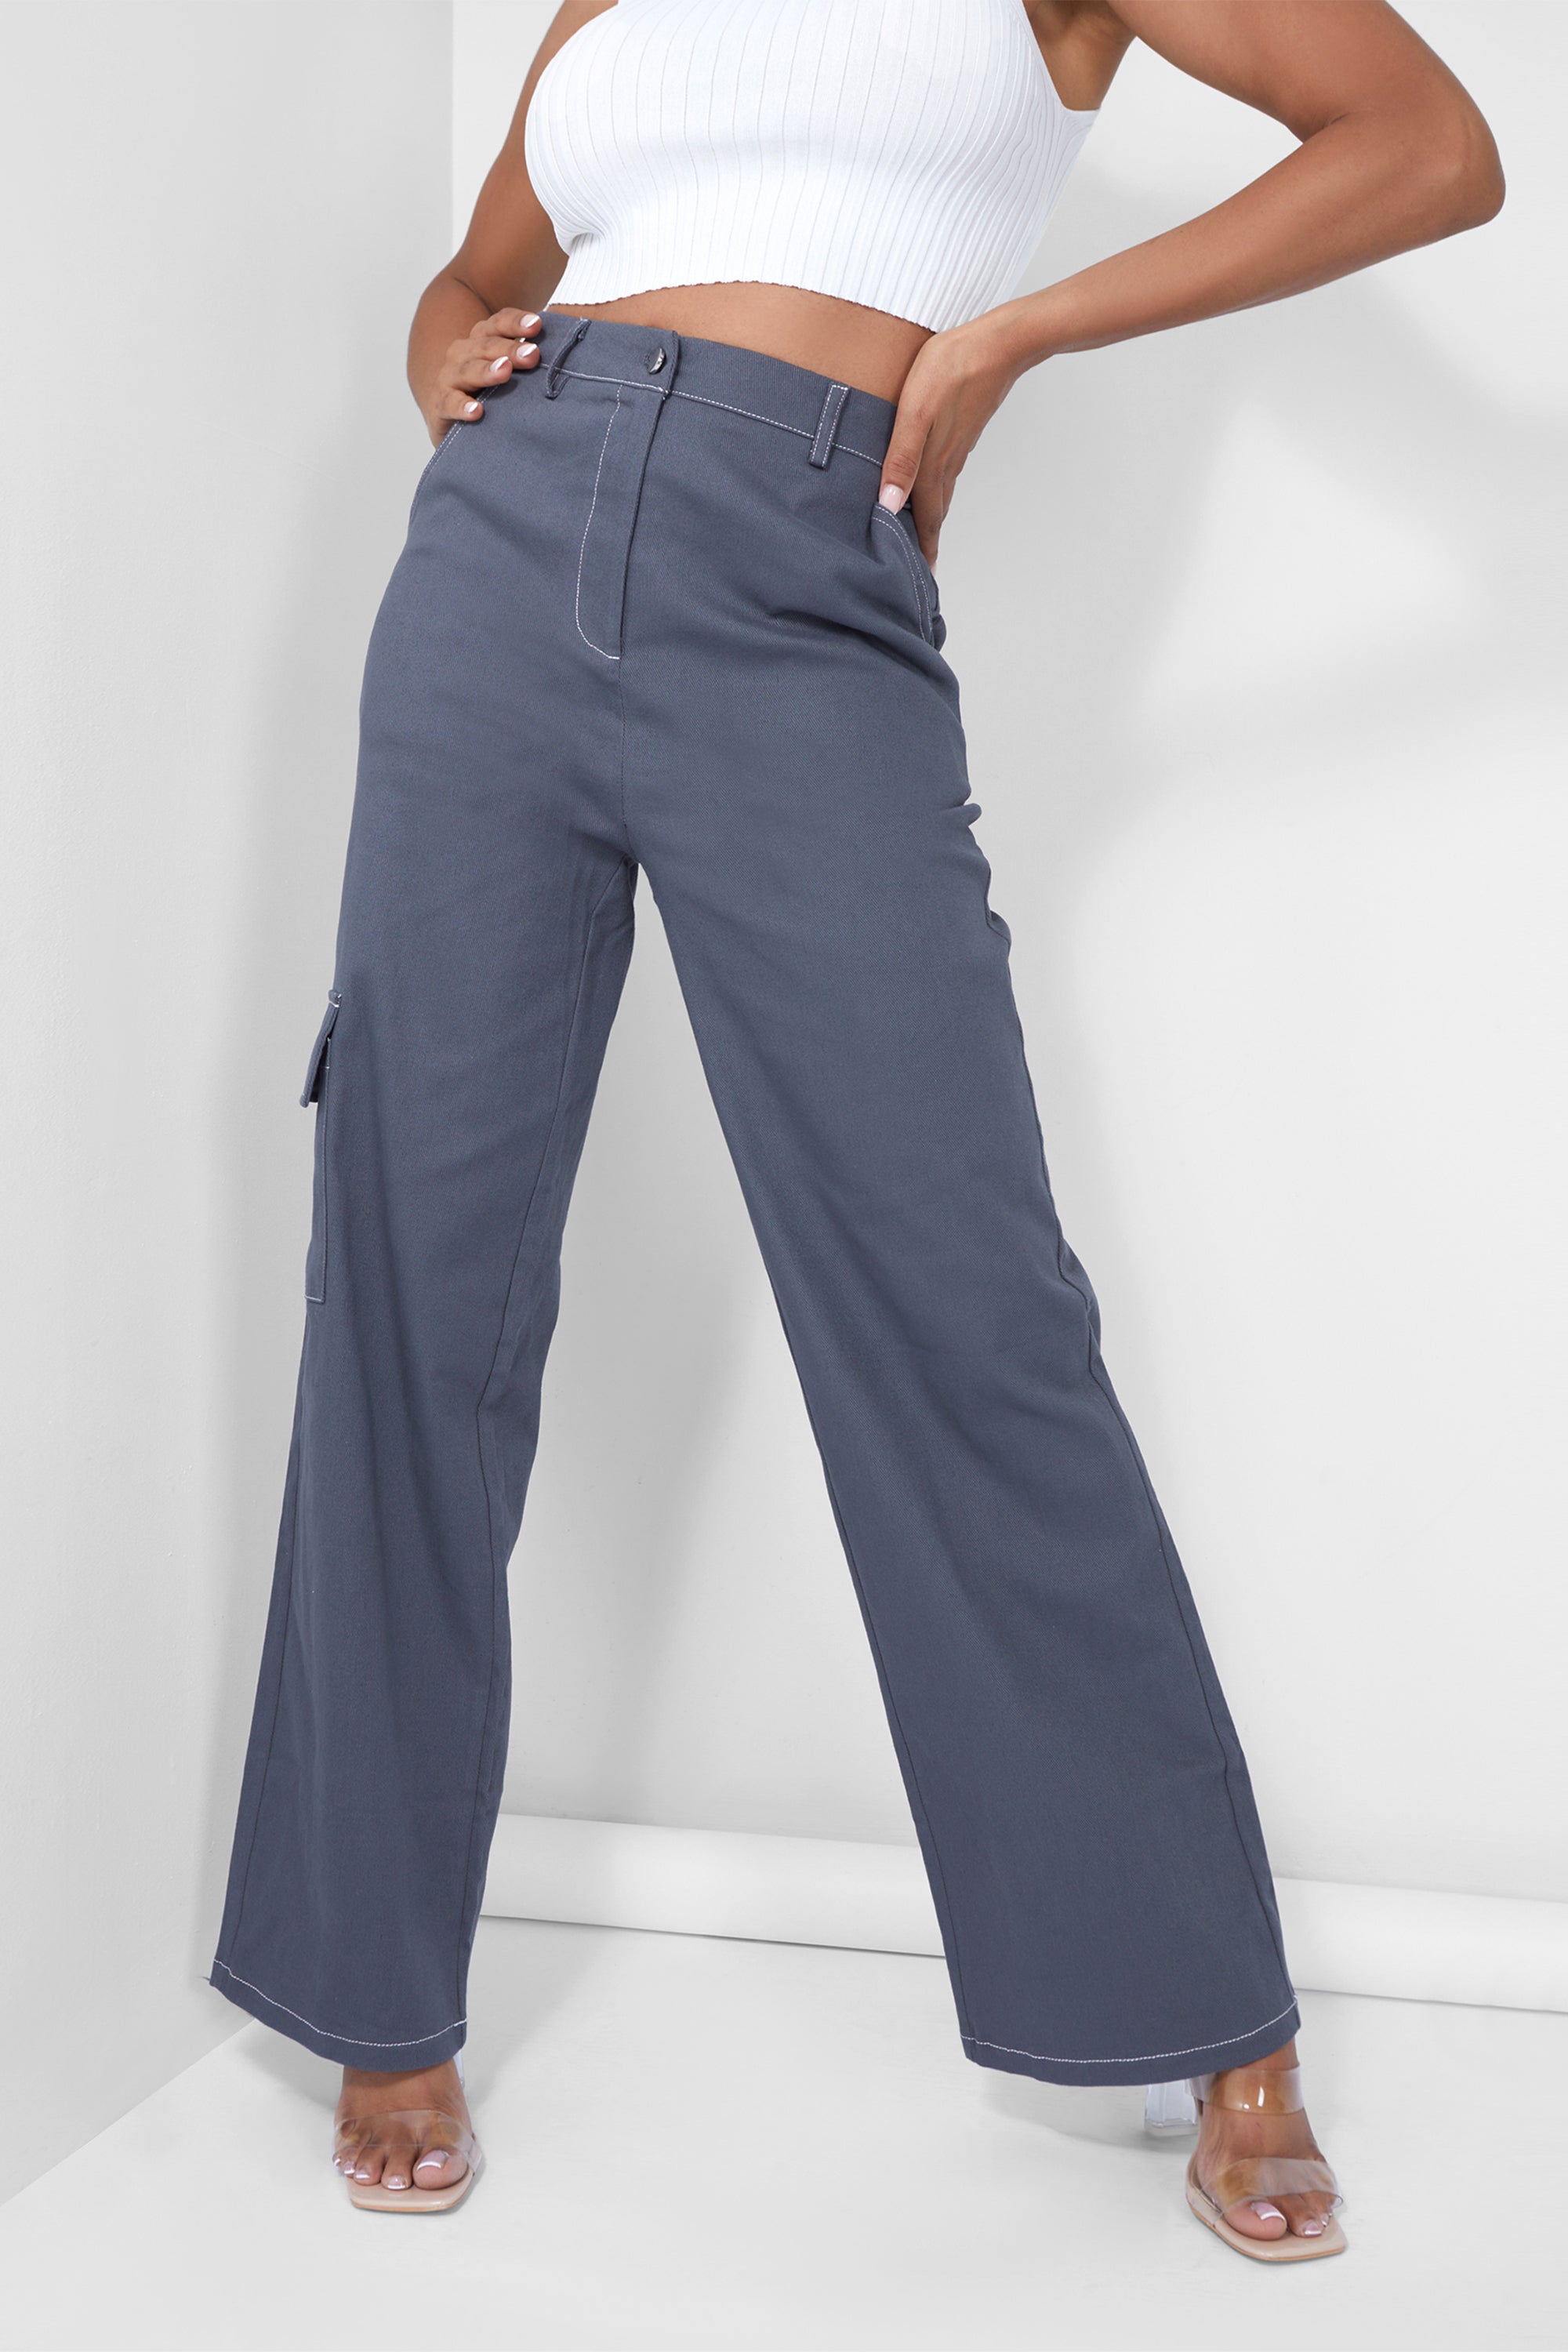 Denim Contrast Stitch Cargo Jeans Grey